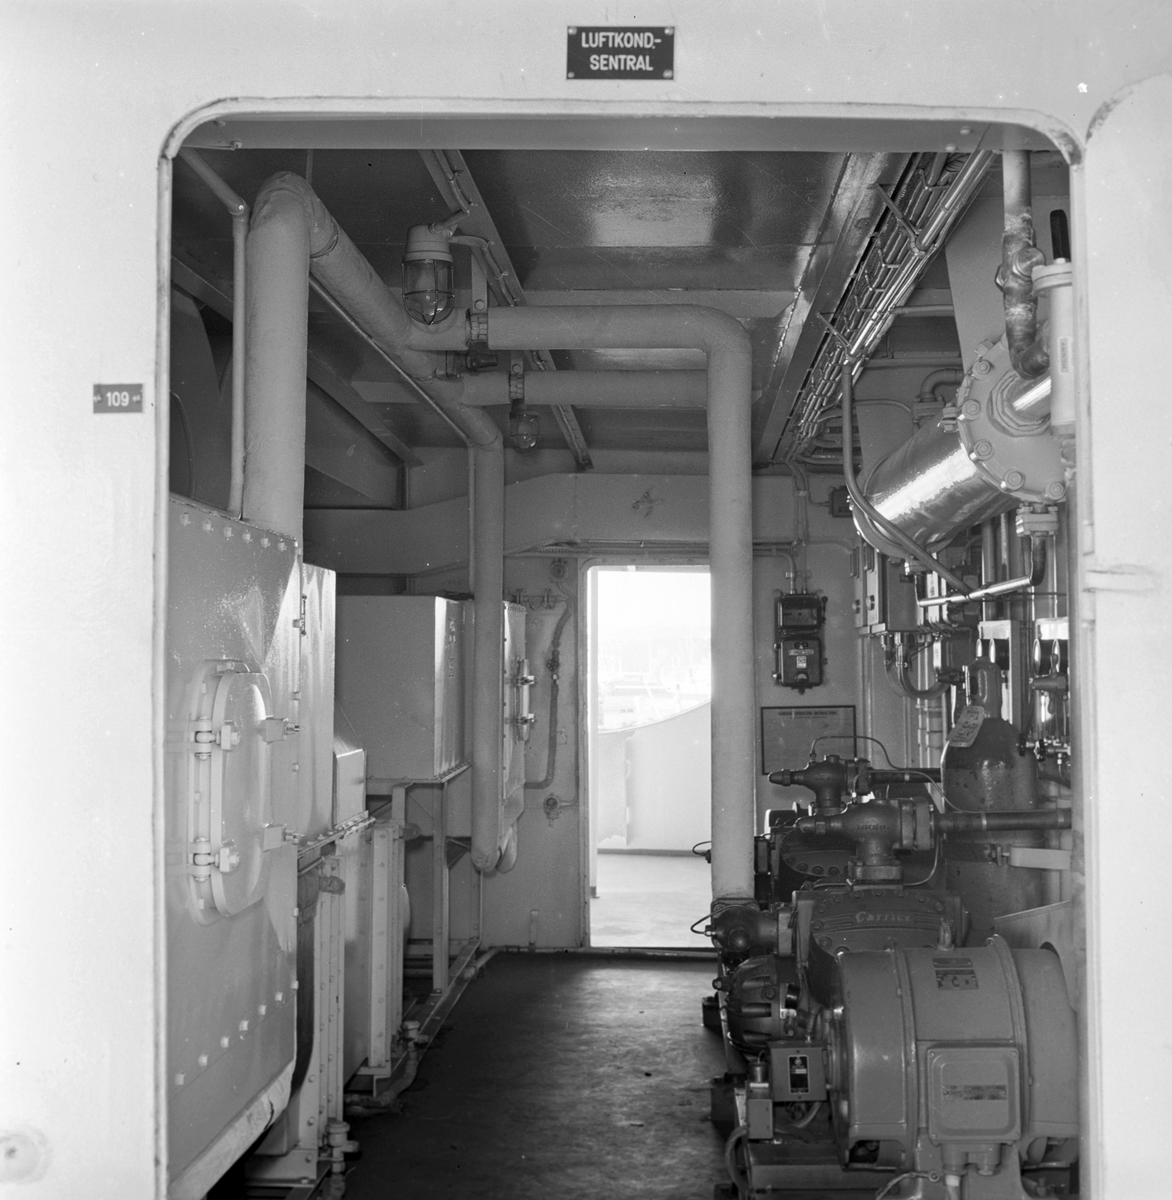 Serie. Den nye tankbåten T/T "Honnør". Fotografert juli 1958. 